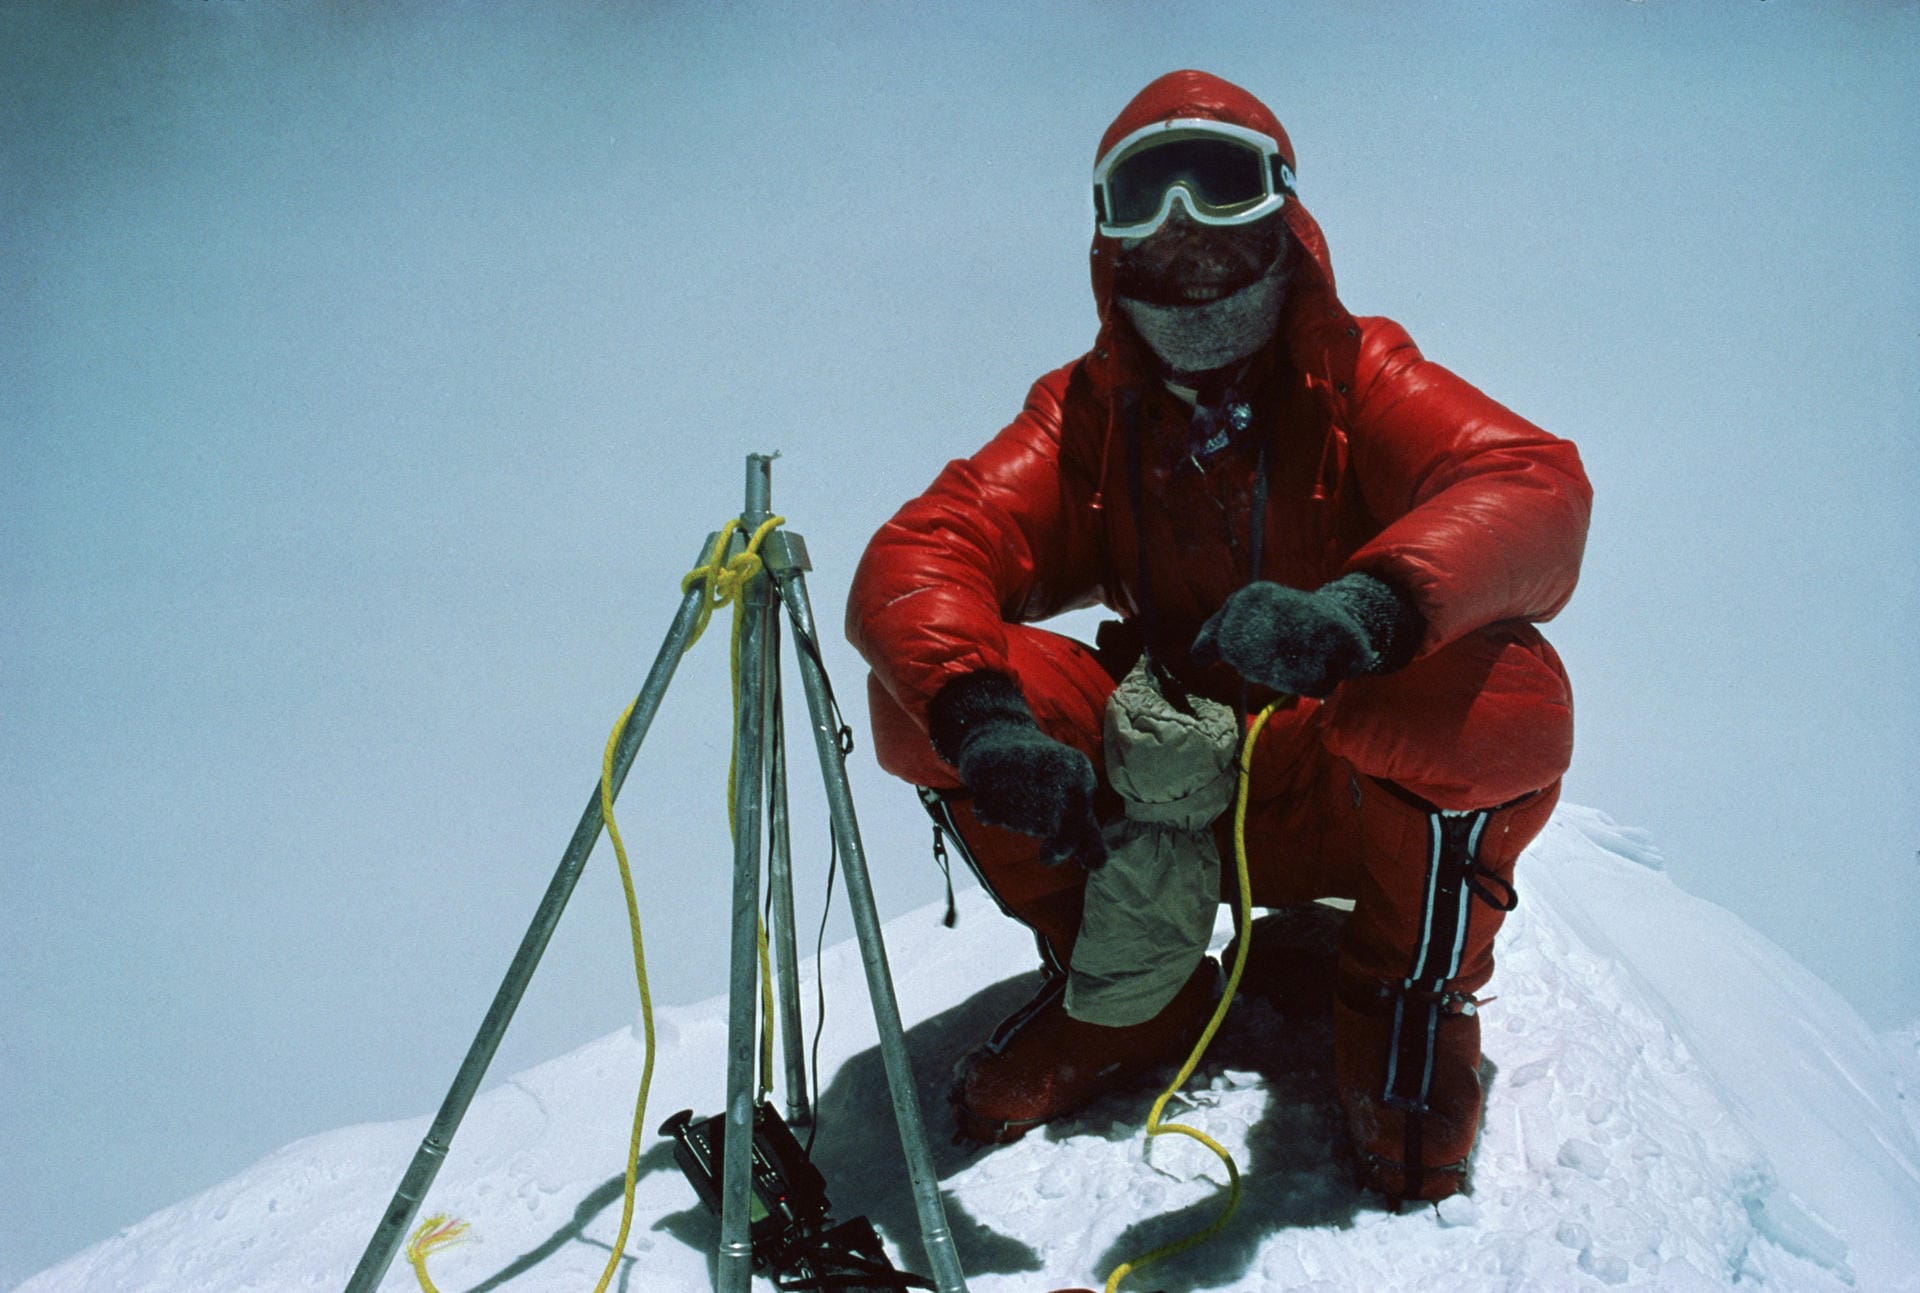 Reinhold Messner auf dem Gipfel des Mount Everest: Als Erster gelang es Messner, den 8.848 Meter hohen Berg ohne Flaschensauerstoff zu besteigen. Er und Peter Haberle erreichten den Gipfel im Jahr 1978. Zwei Jahre später stieg Messner noch ein weiteres Mal ohne Begleitung auf den Berg.